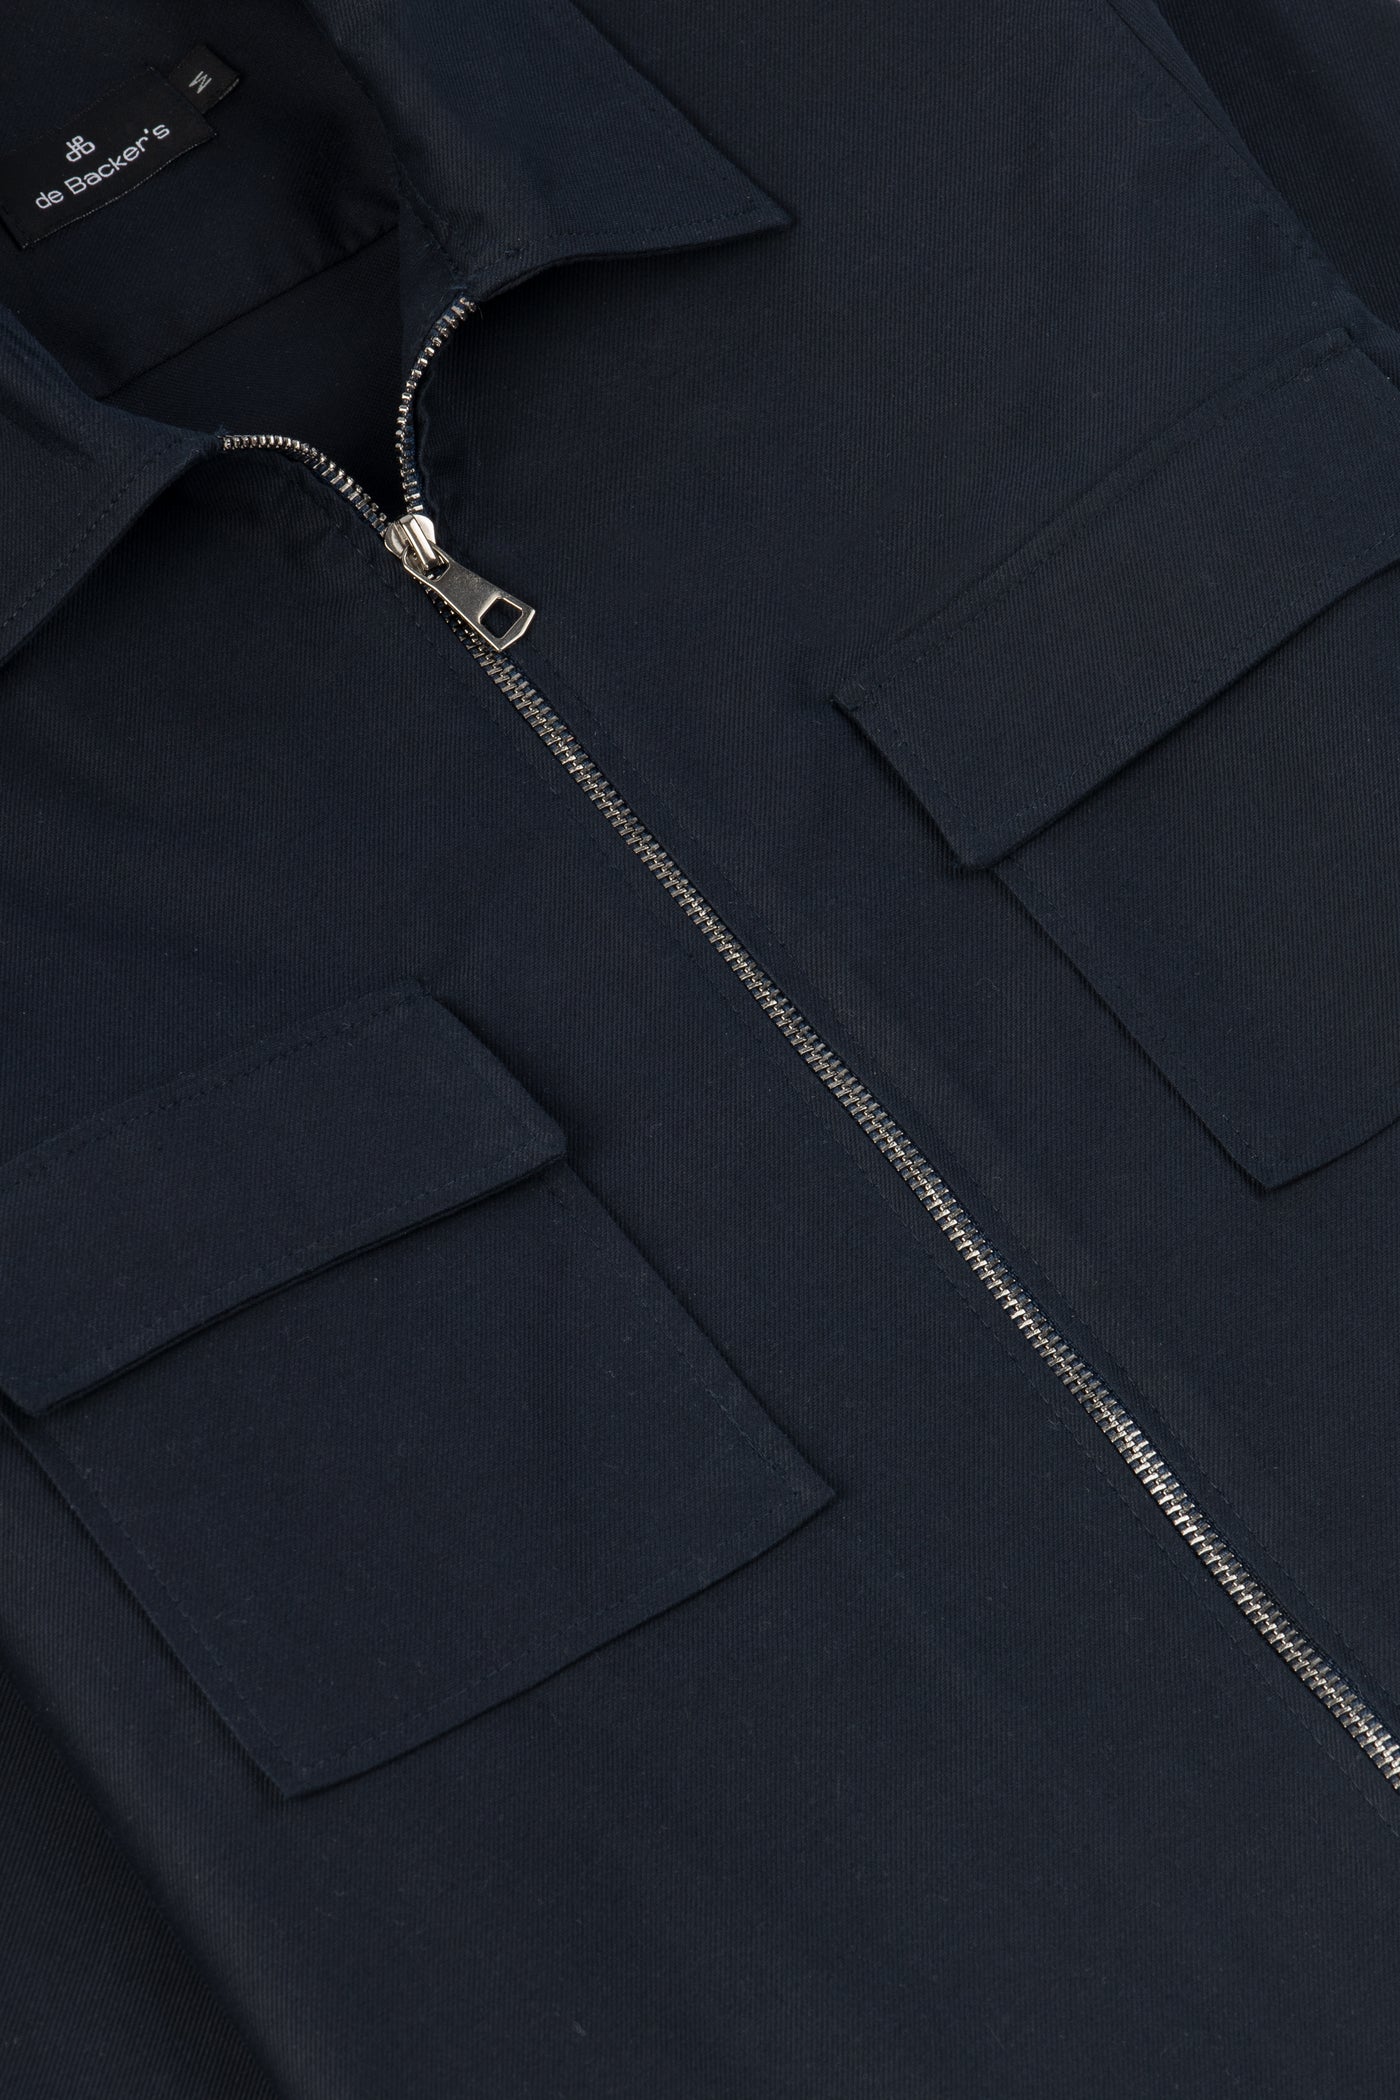 Solid Navy Zip-Up Over-Shirt